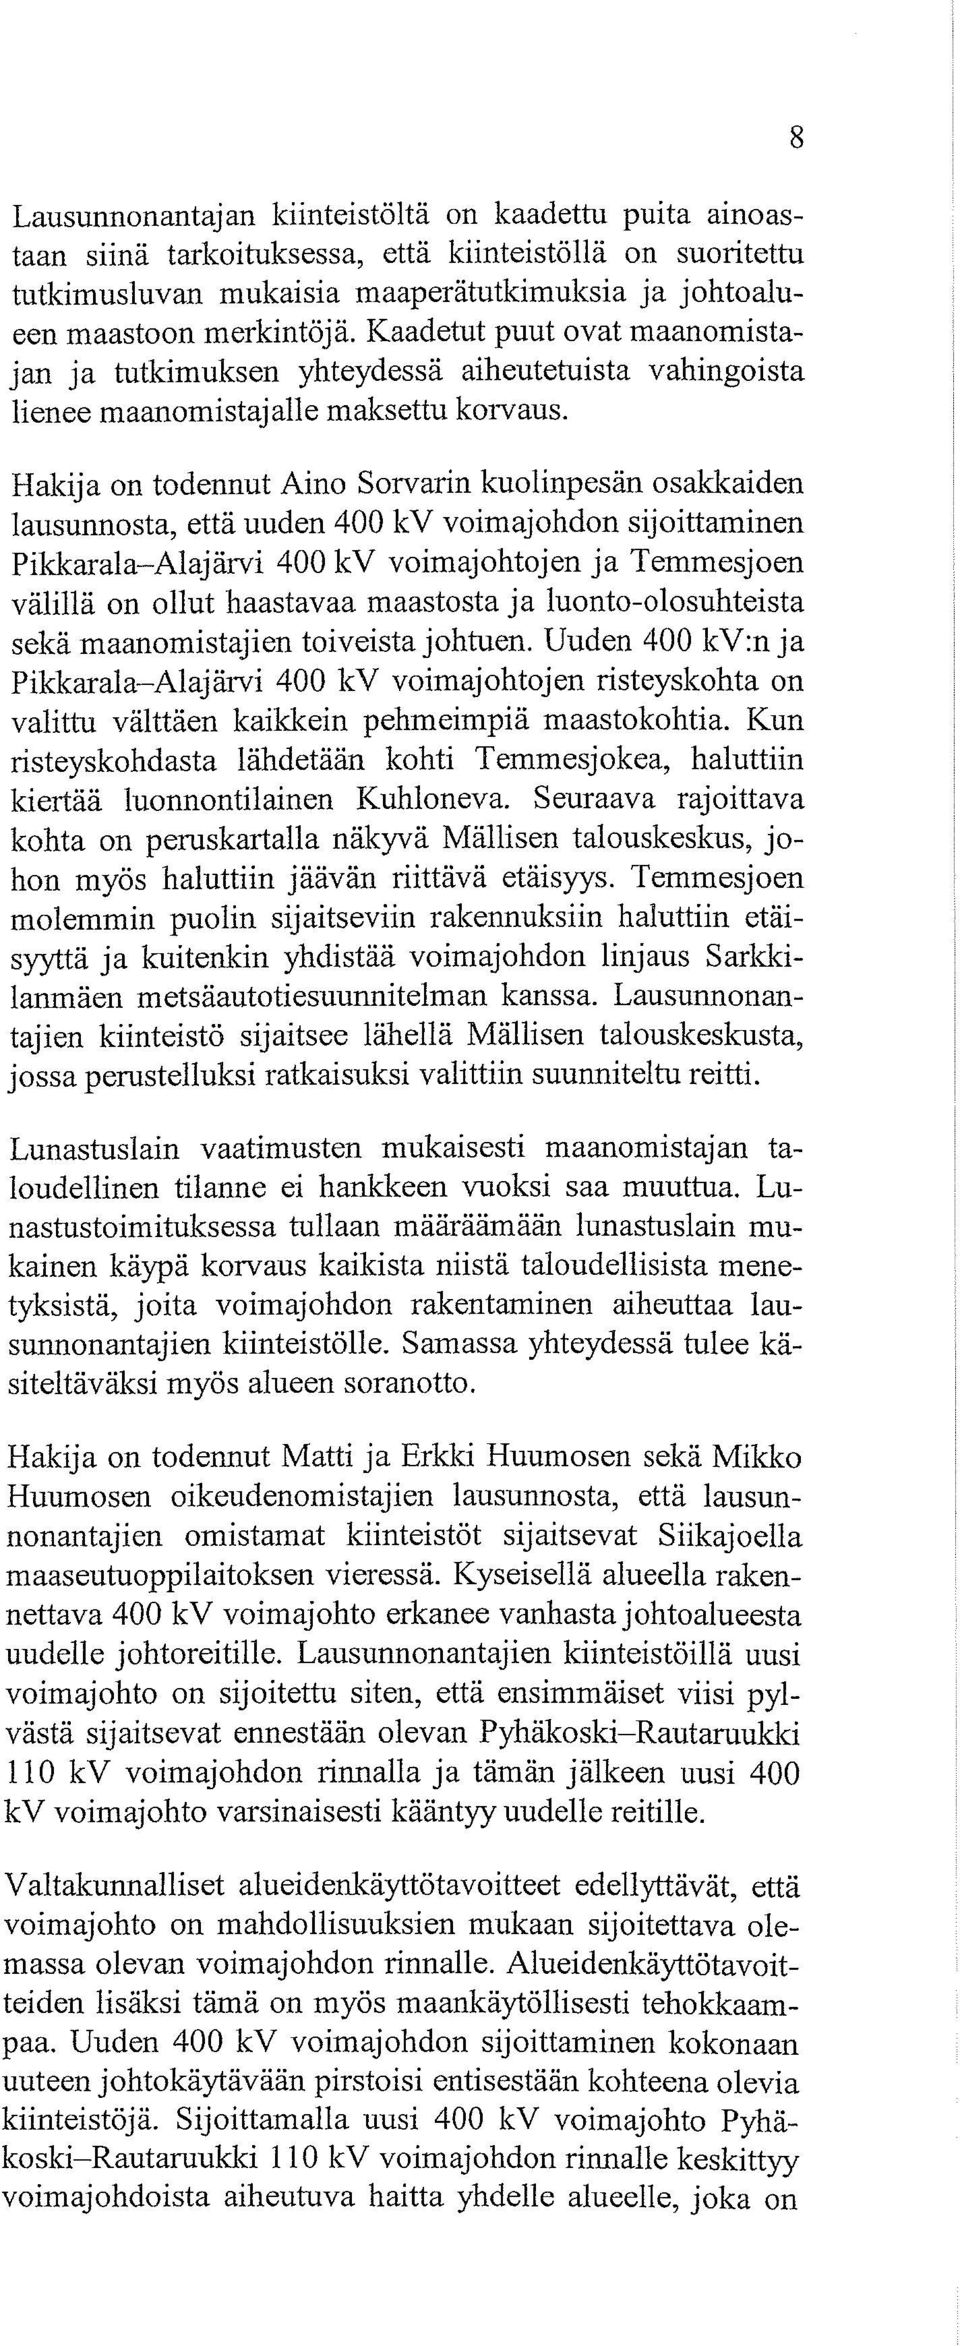 Hakija on todennut Aino Sorvarin kuolinpesän osakkaiden lausunnosta, että uuden 400 kv voimajohdon sijoittaminen Pikkarala-Alajärvi 400 kv voimajohtojen ja Temmesjoen välillä on ollut haastavaa